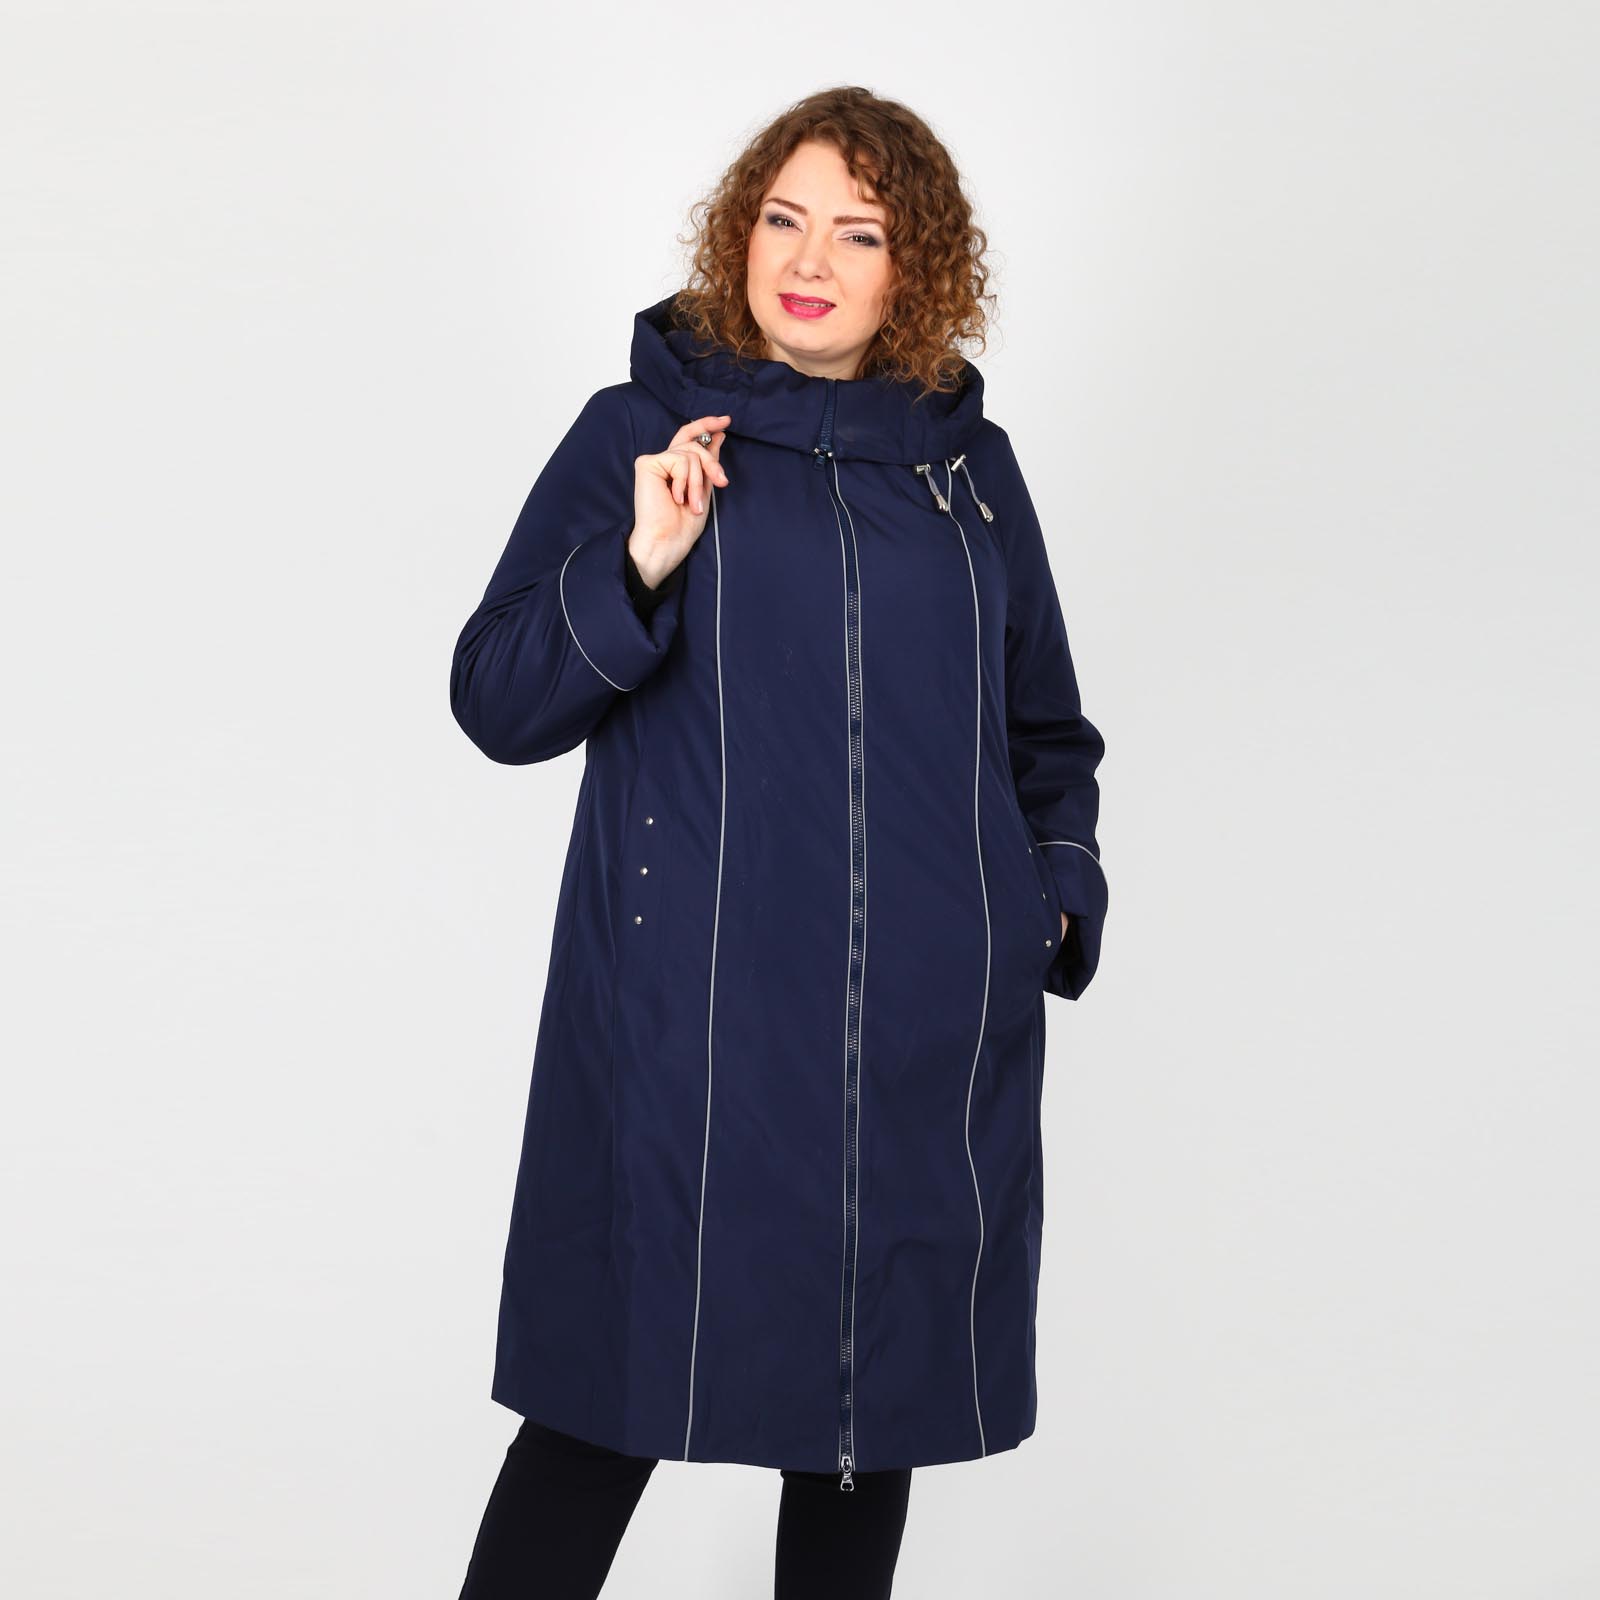 Пальто на молнии с капюшоном и карманами Mio Imperatrice, размер 50, цвет синий - фото 4